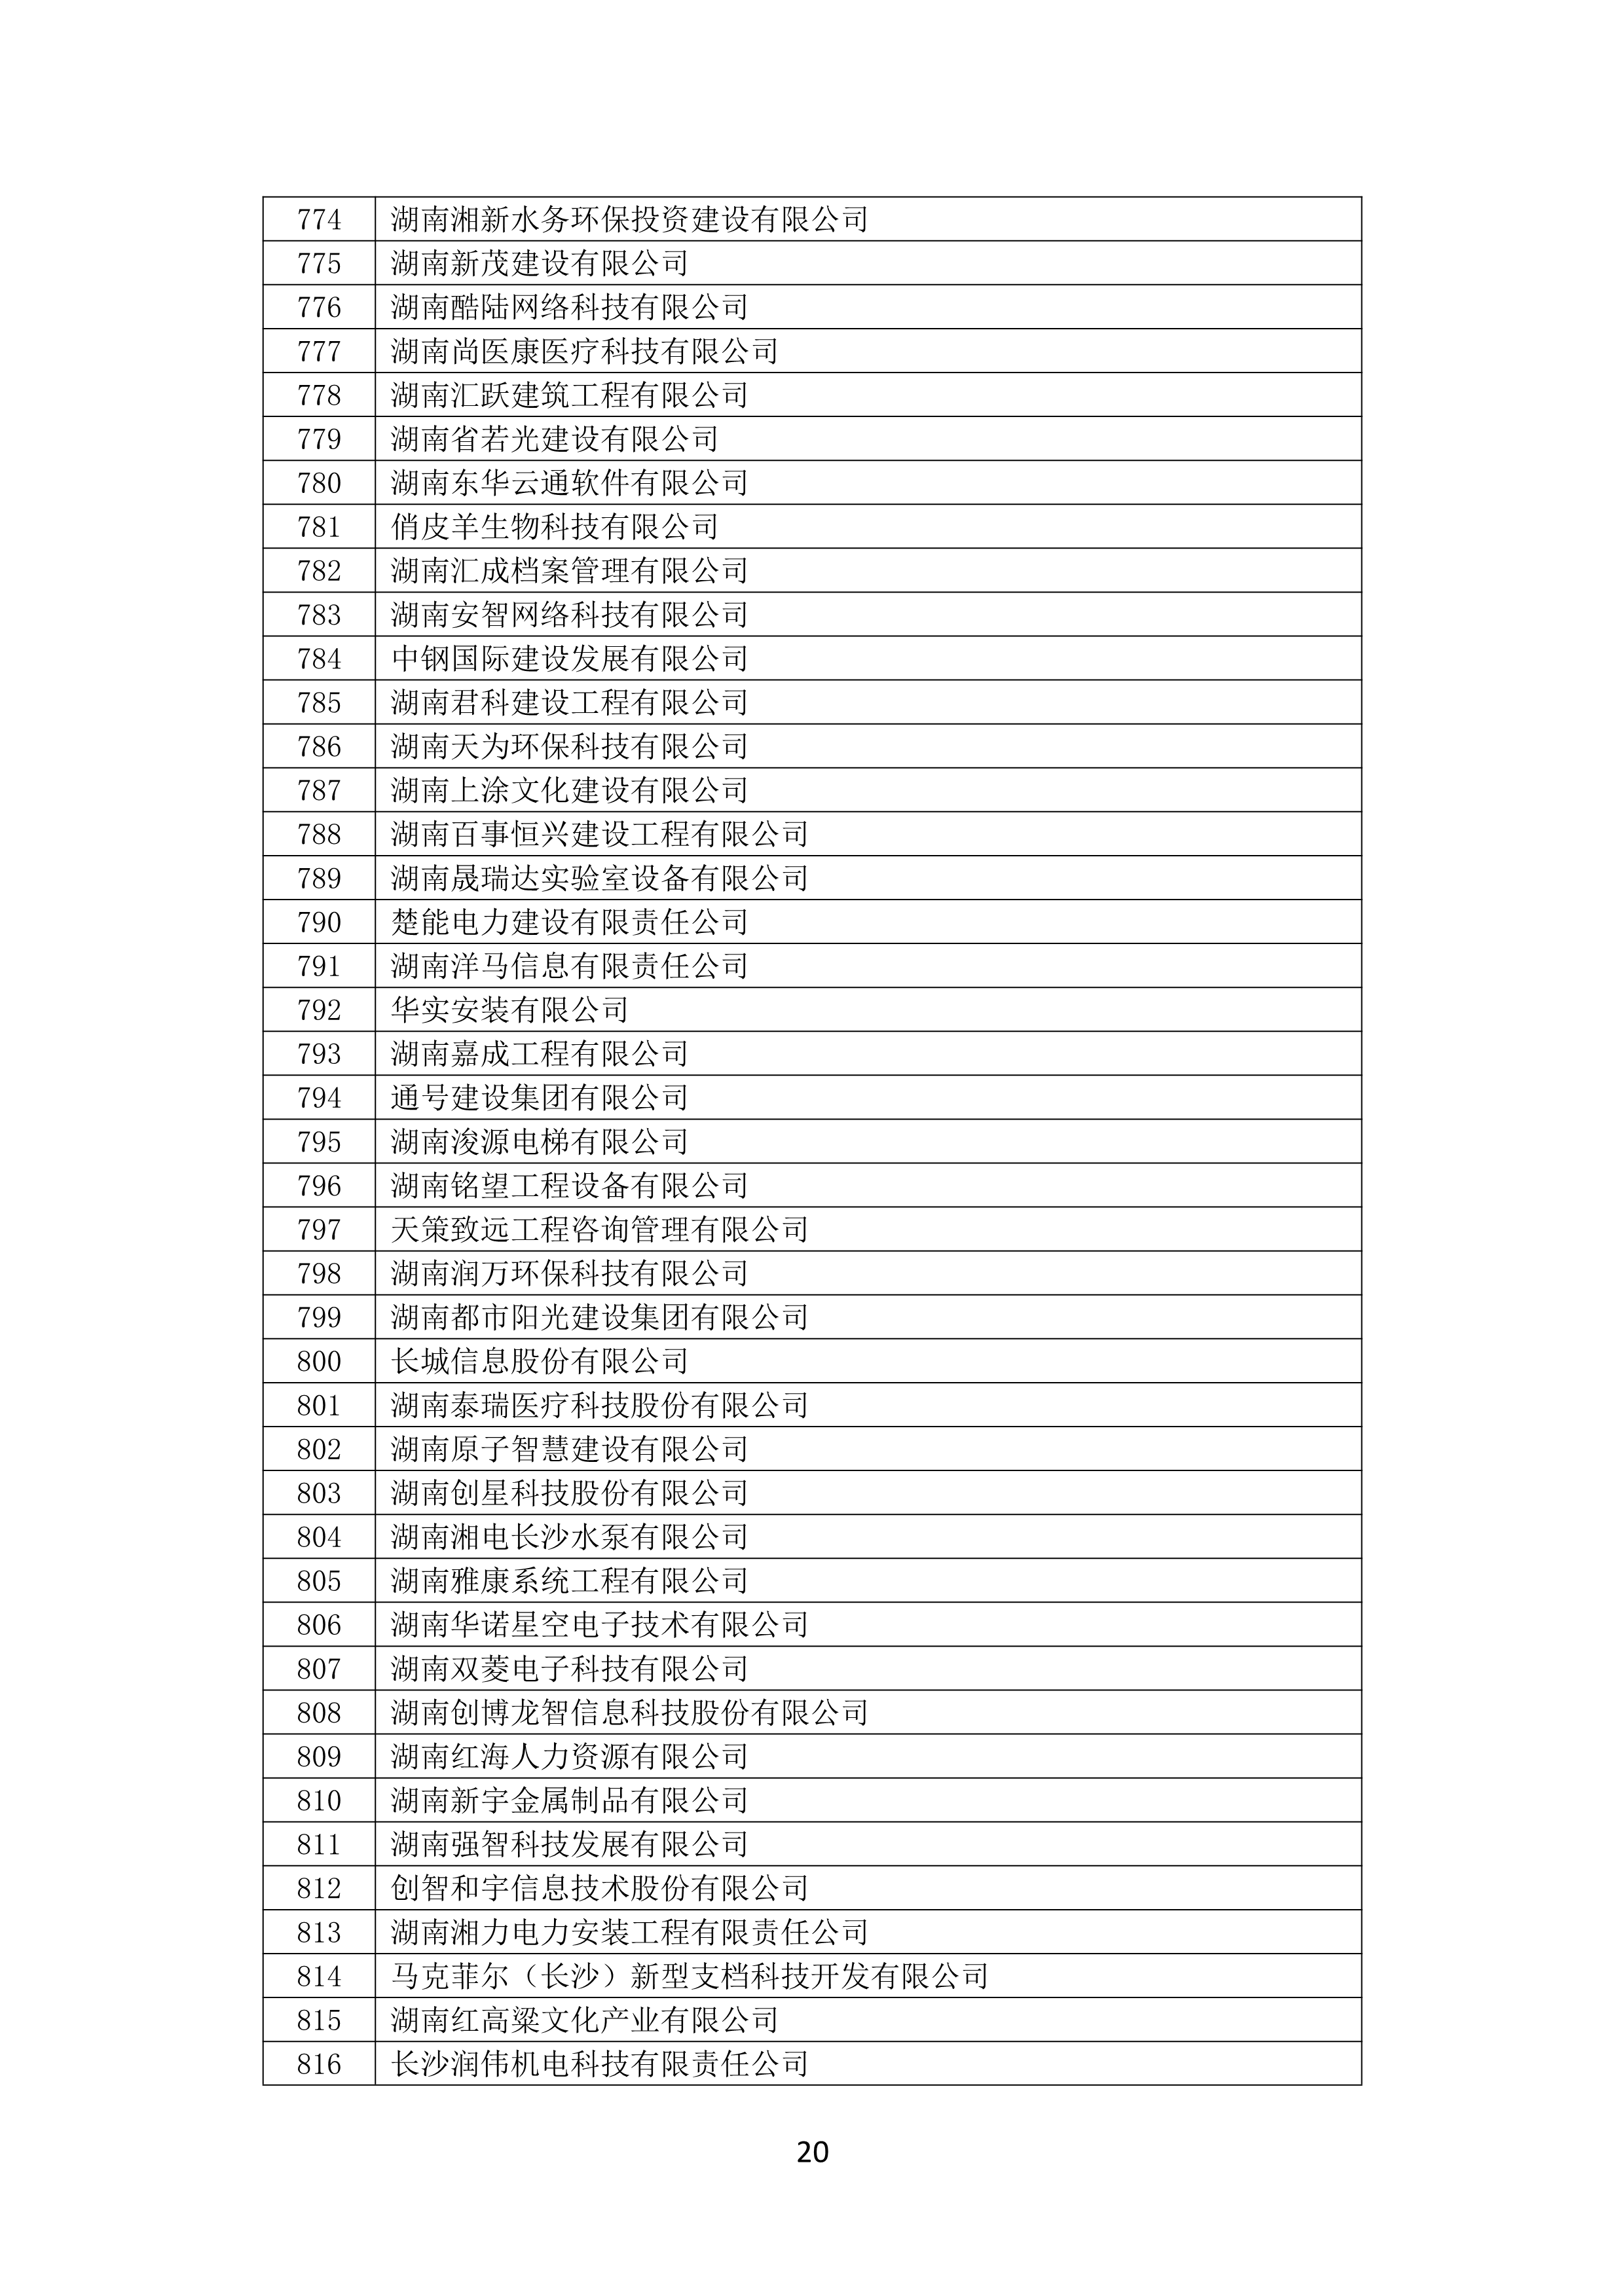 2021 年(nián)度湖南省守合同重信用企業名單_21.png